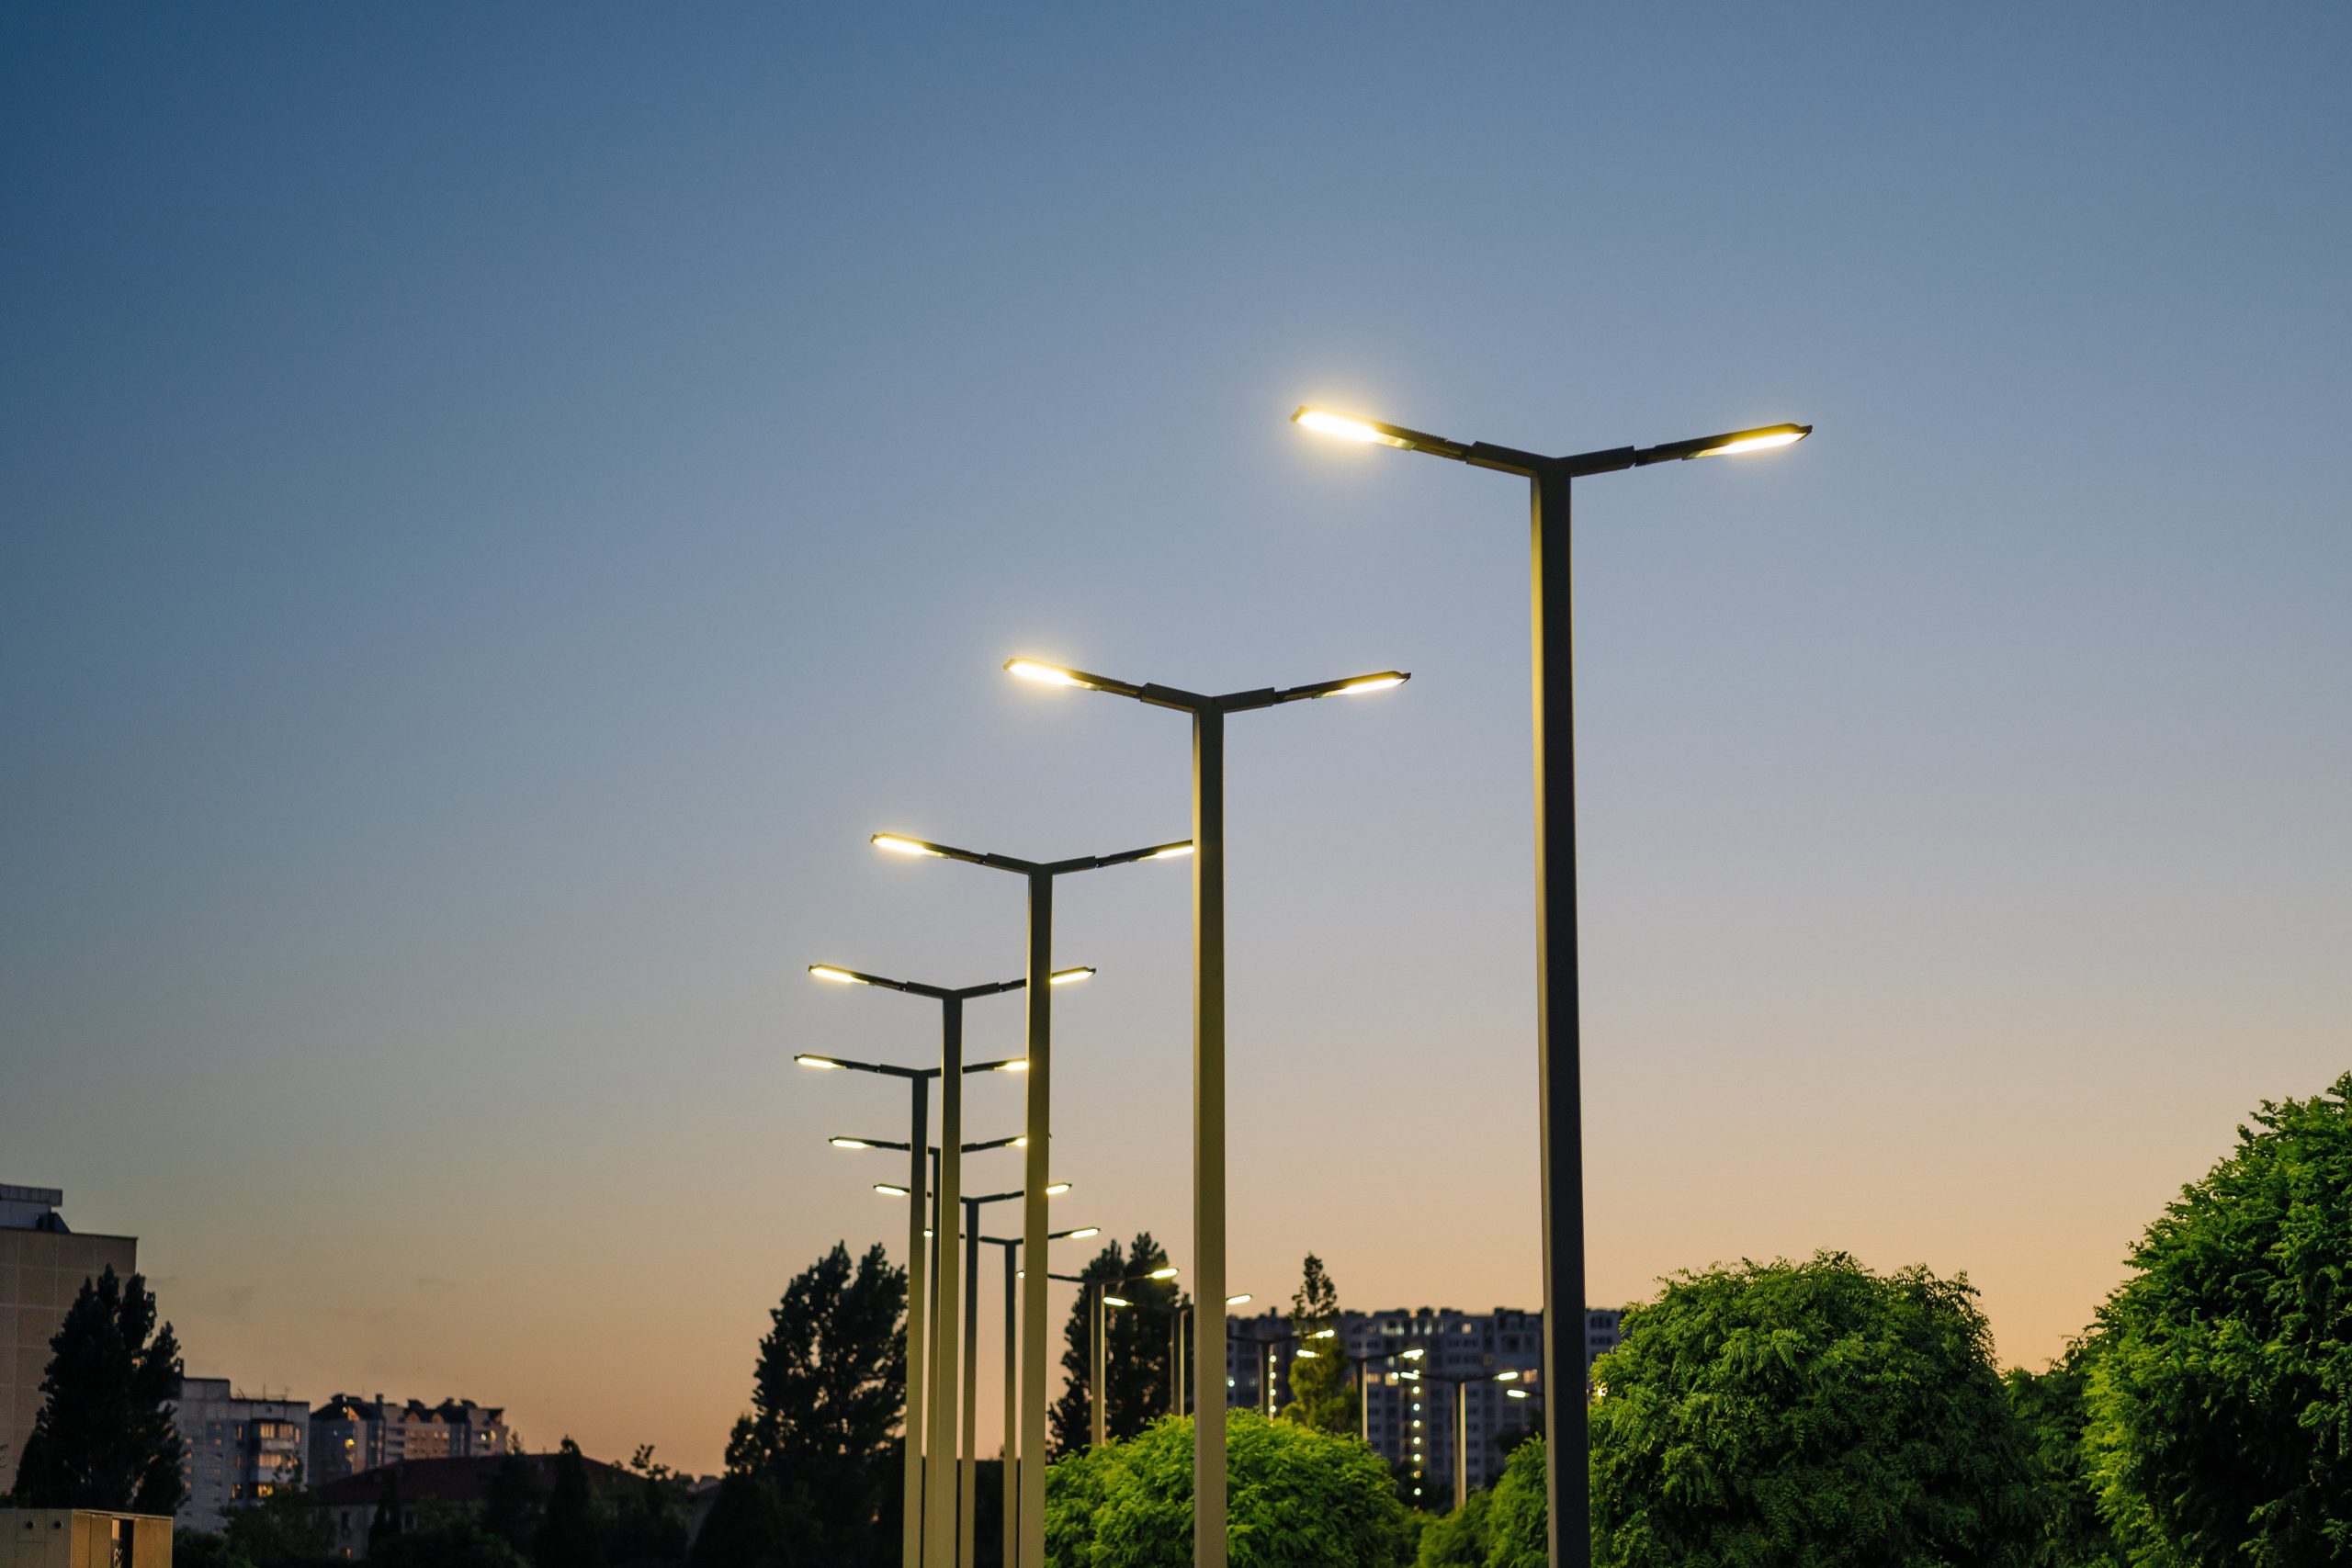 Fotka lamp veřejného osvětlení